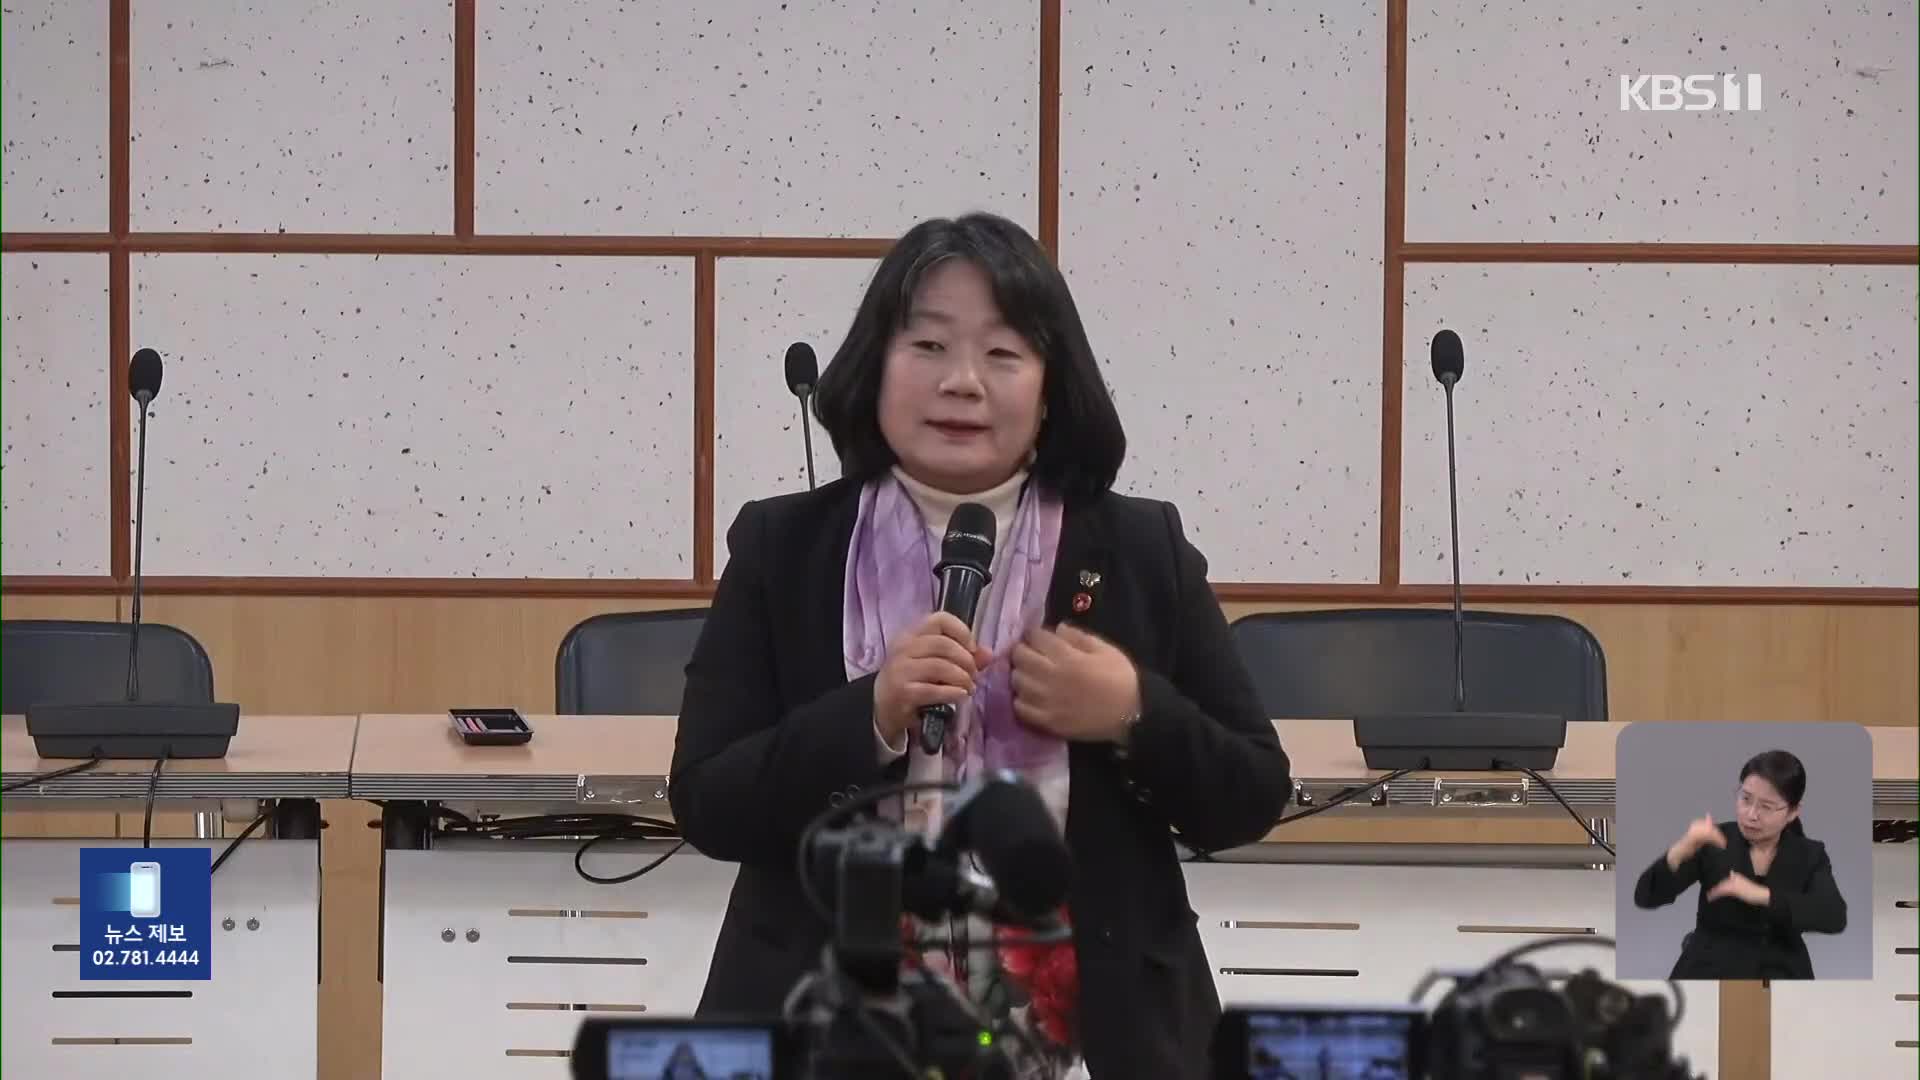 윤미향 의원 주최 토론회 “북 전쟁관도 수용” 발언 ‘논란’